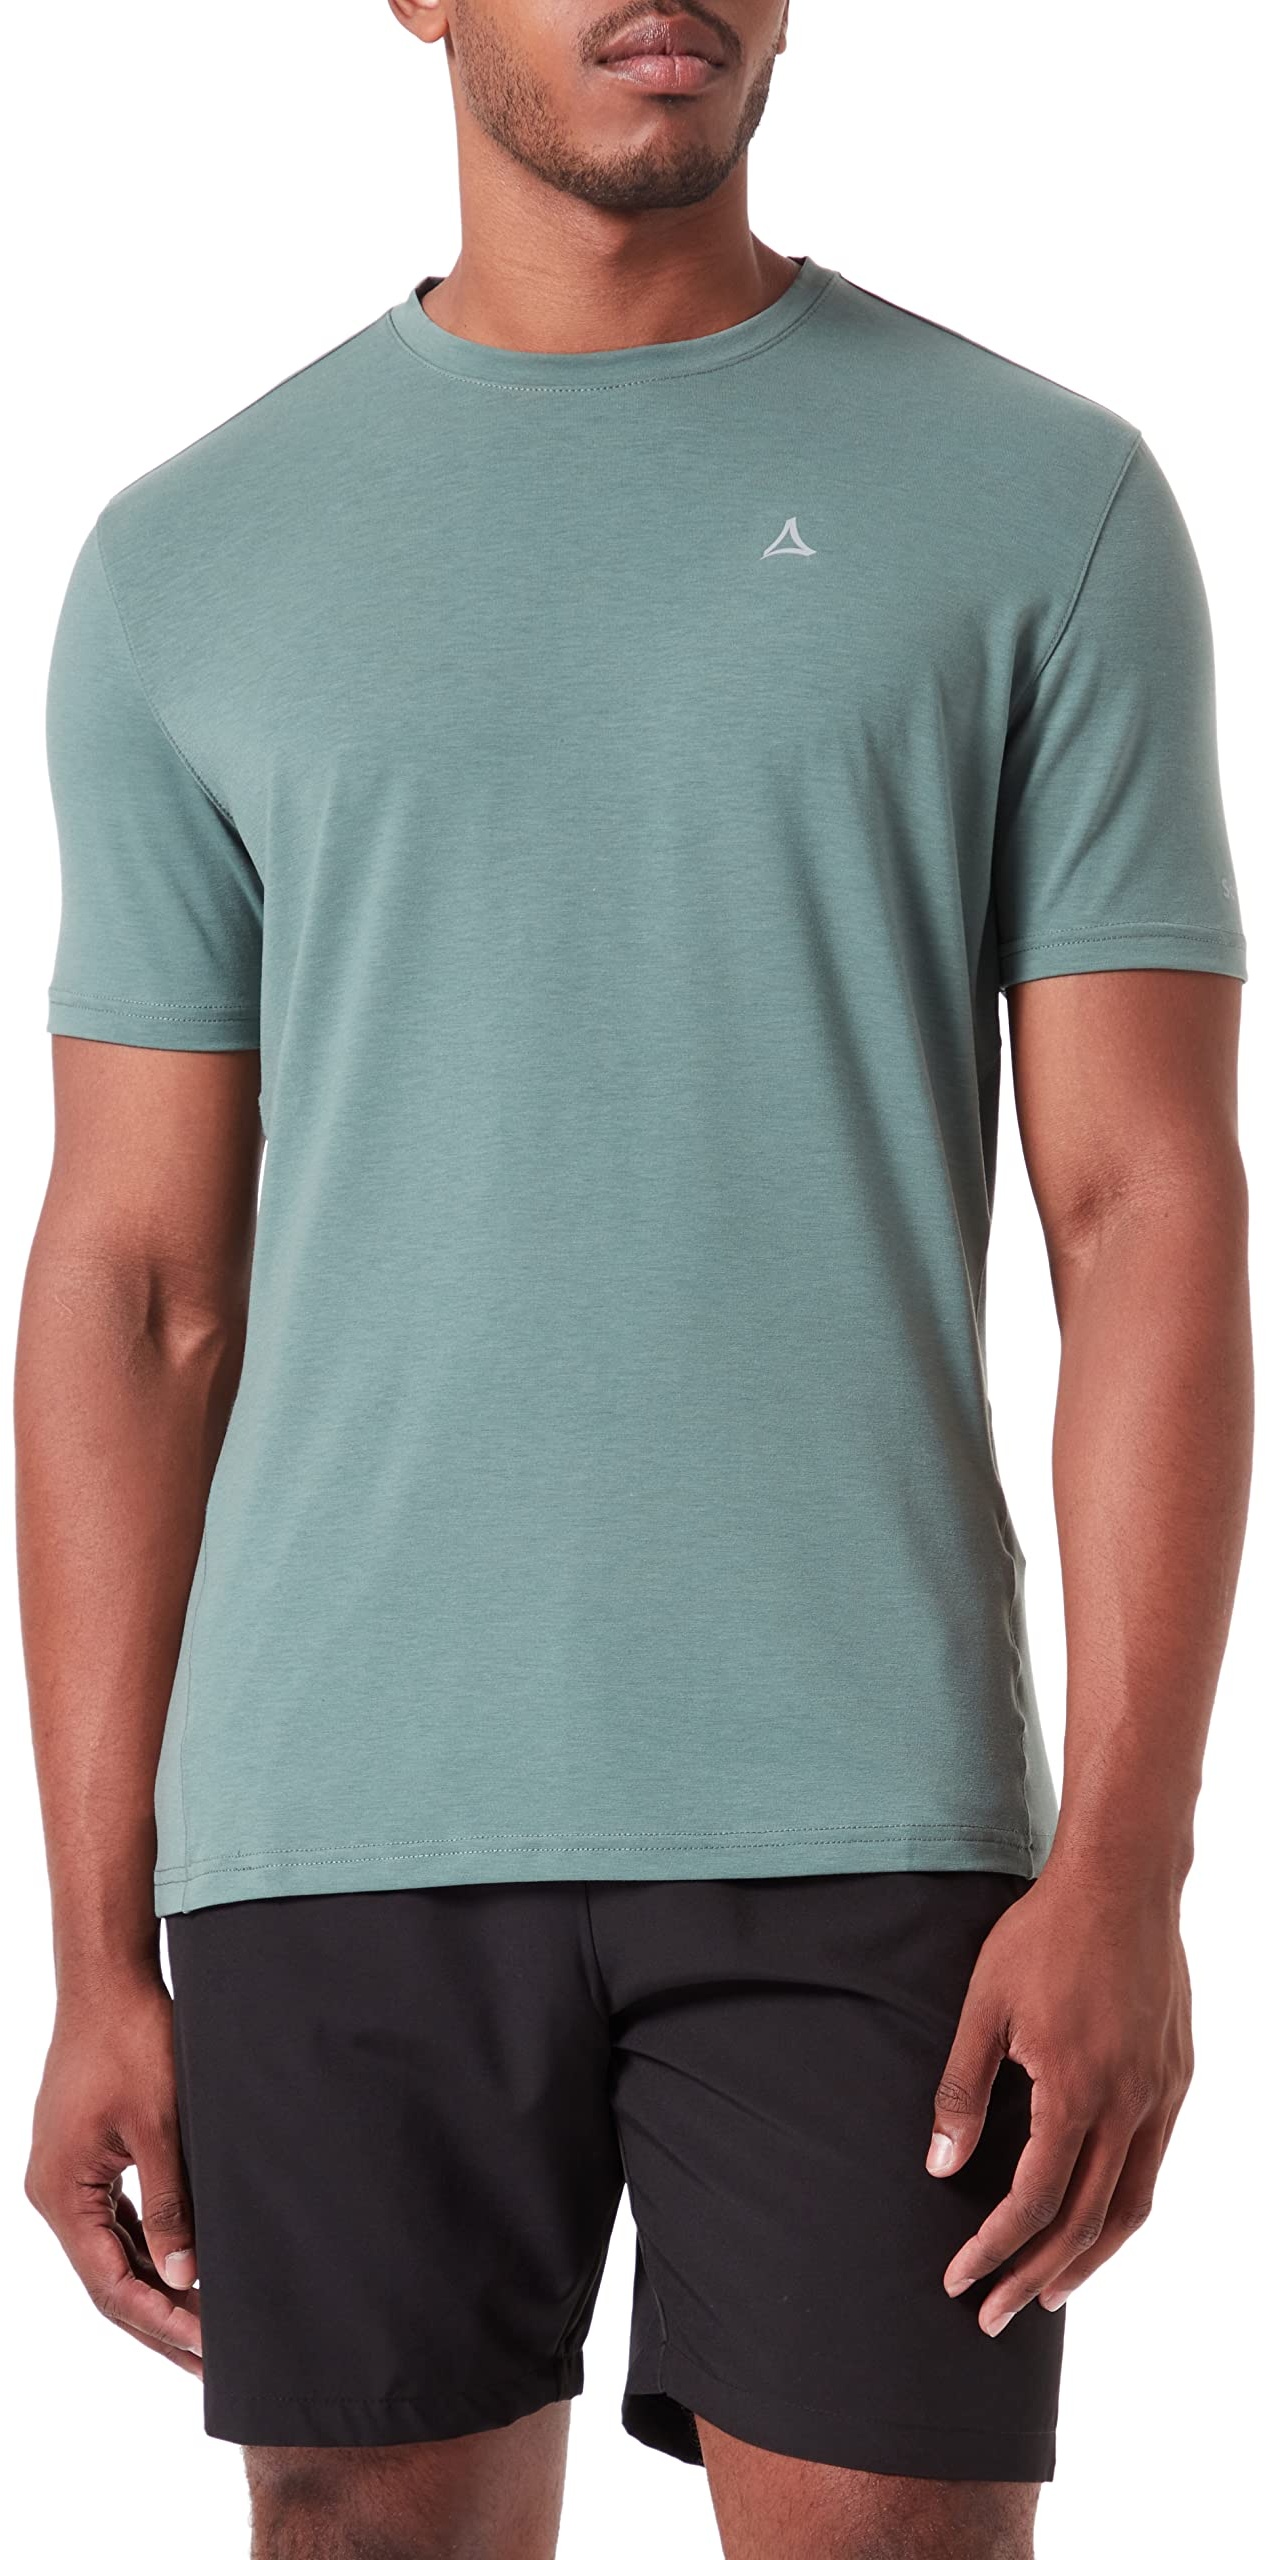 Schöffel Herren T Shirt Osby M, kühlendes Funktionsshirt aus nachhaltigem Material, schnelltrocknendes Wandershirt mit hohem Tragekomfort